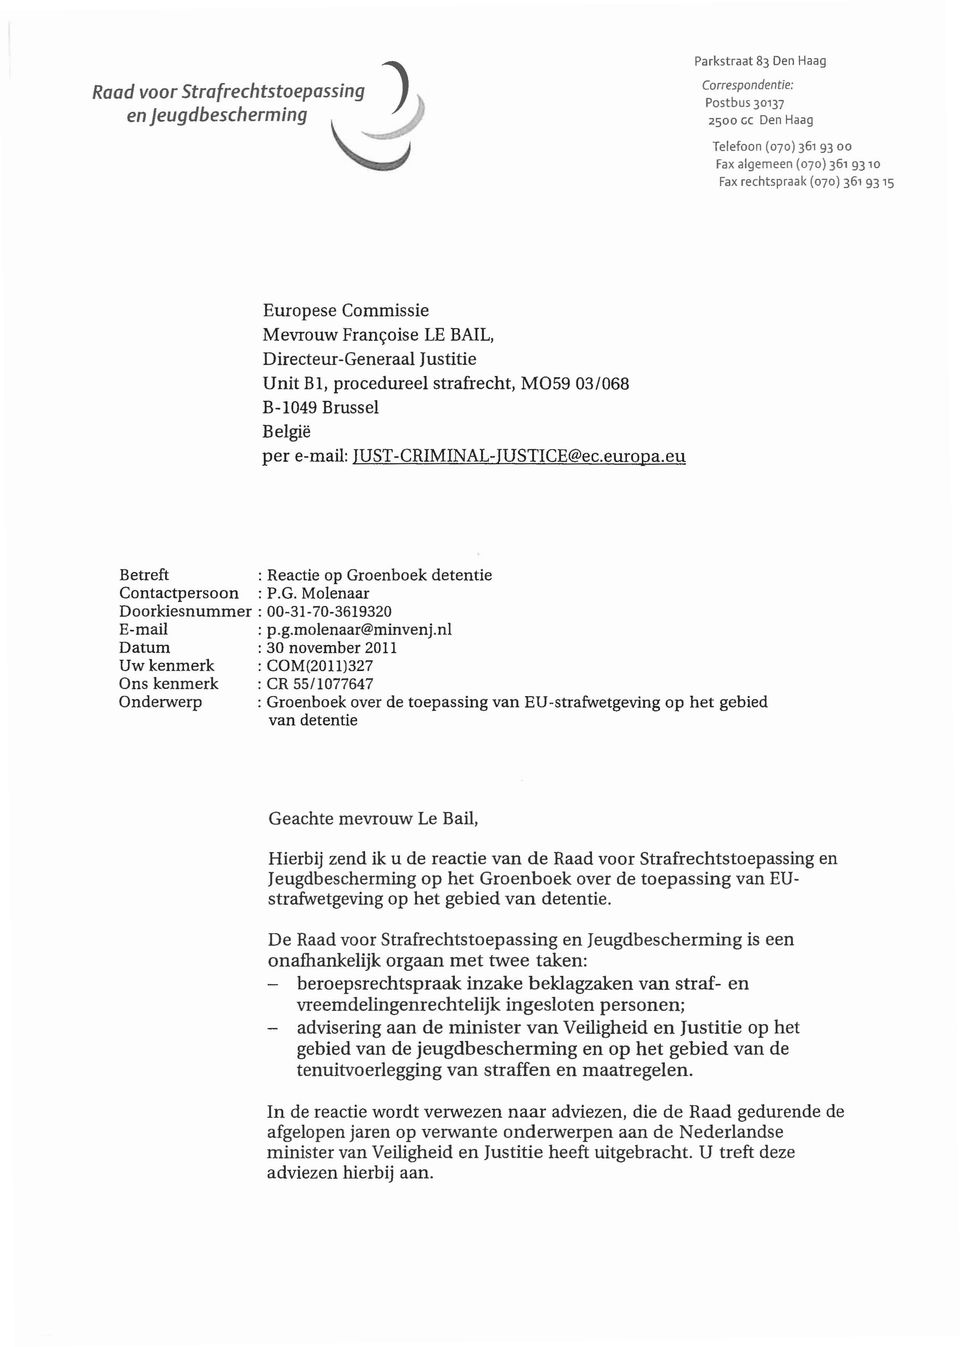 eu Betreft : Reactie op Groenboek detentie Contactpersoon : P.G. Molenaar Doorkiesnummer: 00-31-70-3619320 E-mail: p.g.molenaar@minvenj.